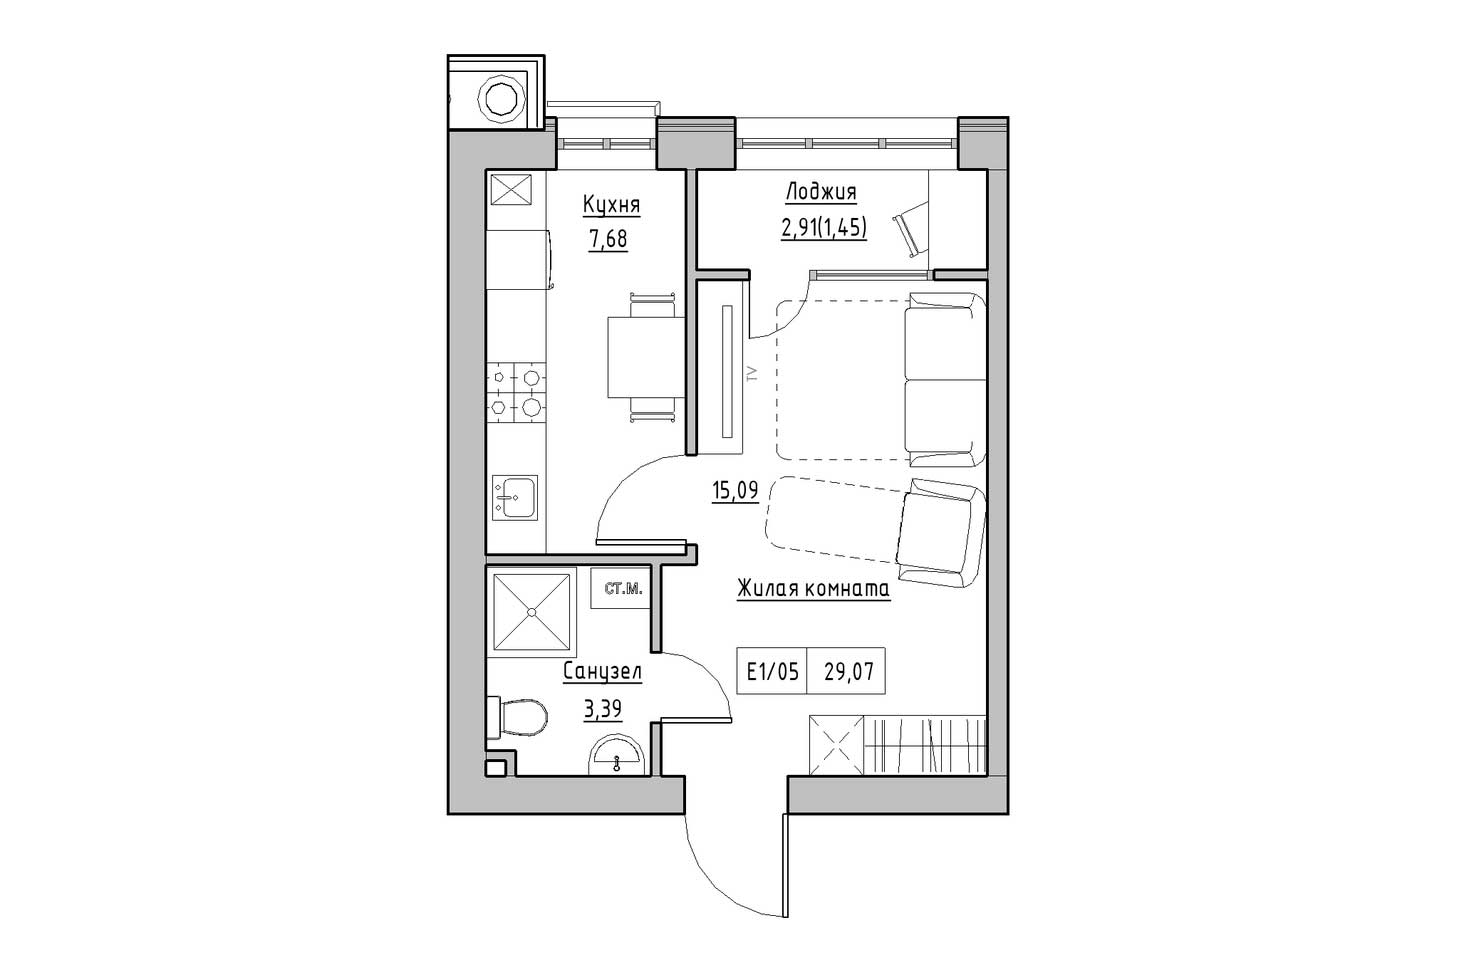 Планування 1-к квартира площею 29.07м2, KS-009-03/0007.